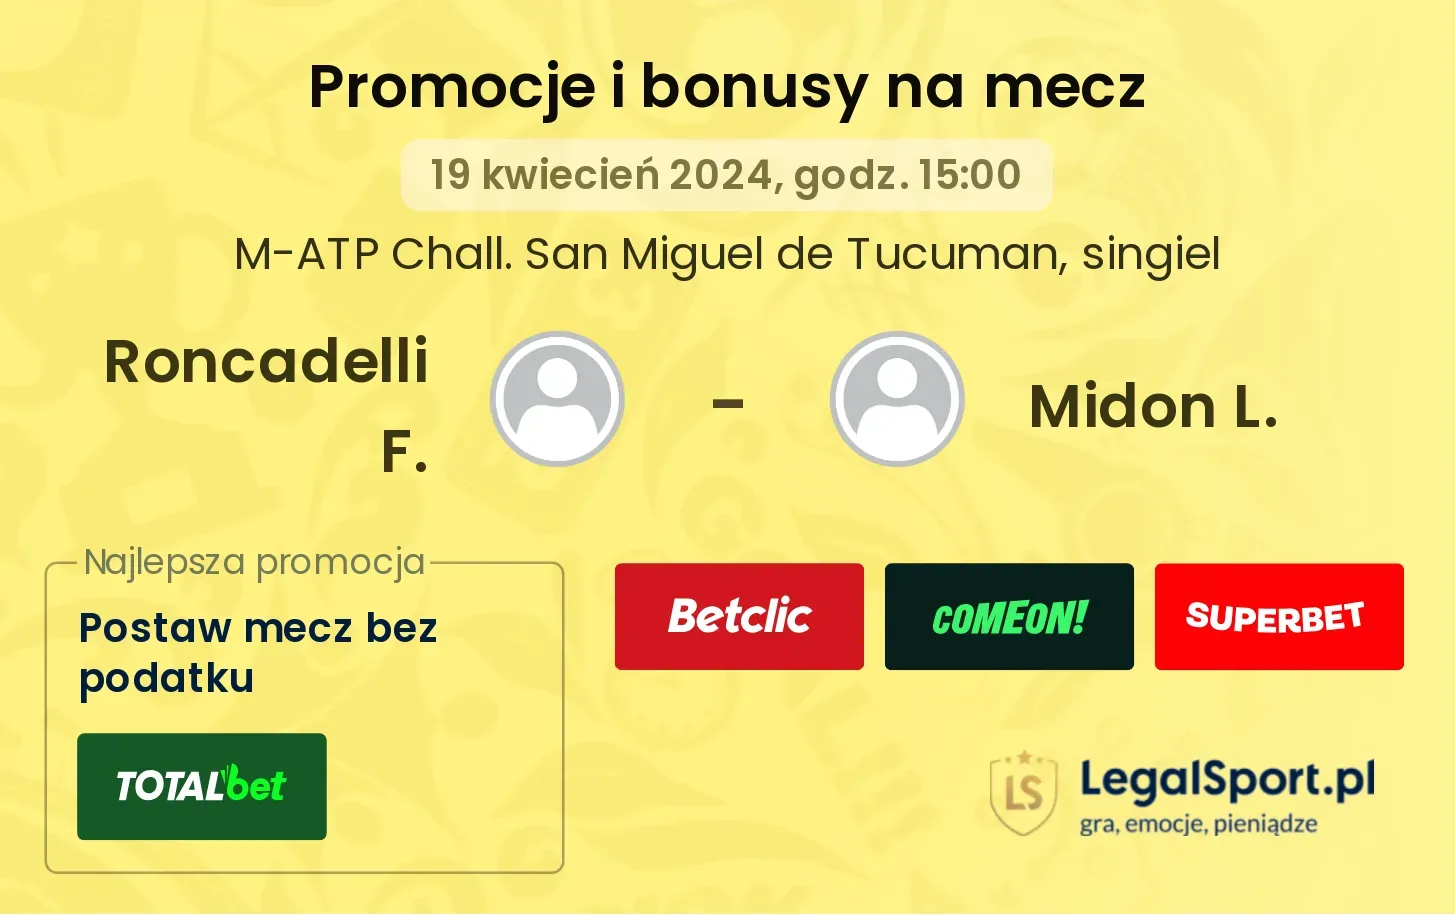 Roncadelli F. - Midon L. promocje bonusy na mecz